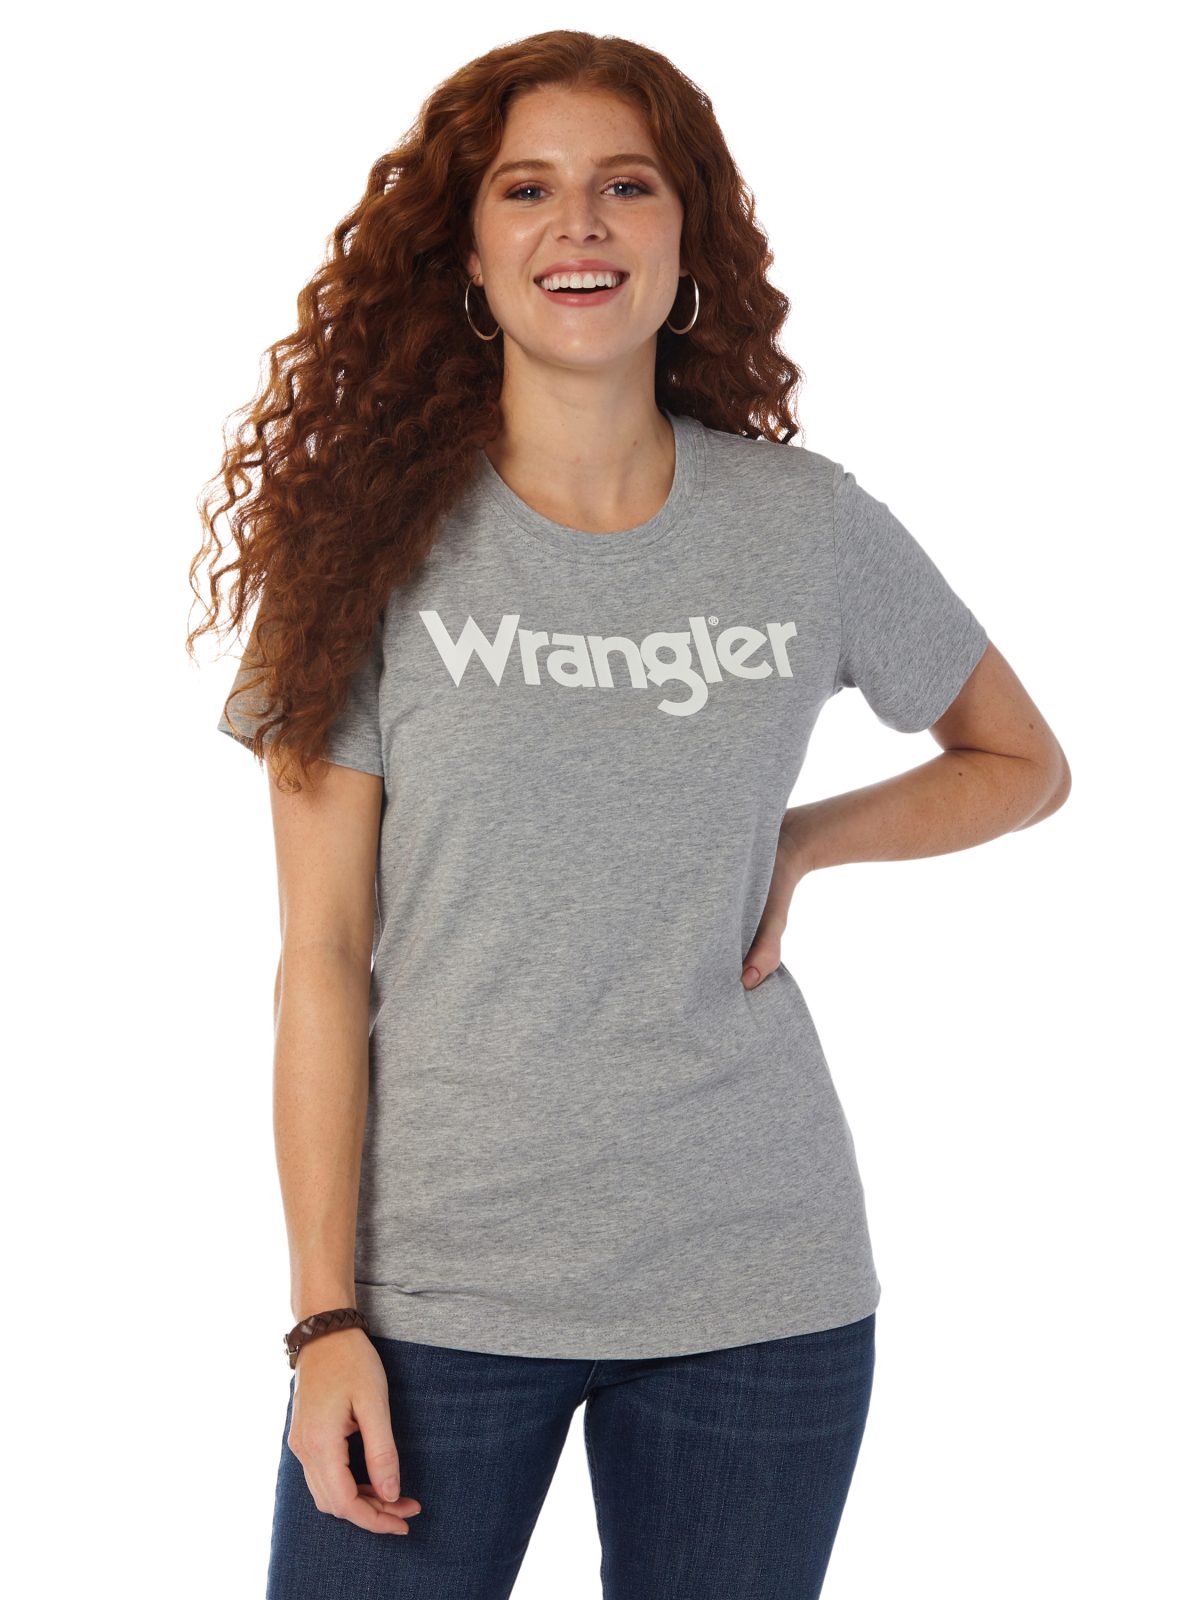 Camiseta gris jaspeada de corte ajustado y manga corta con logo de Wrangler